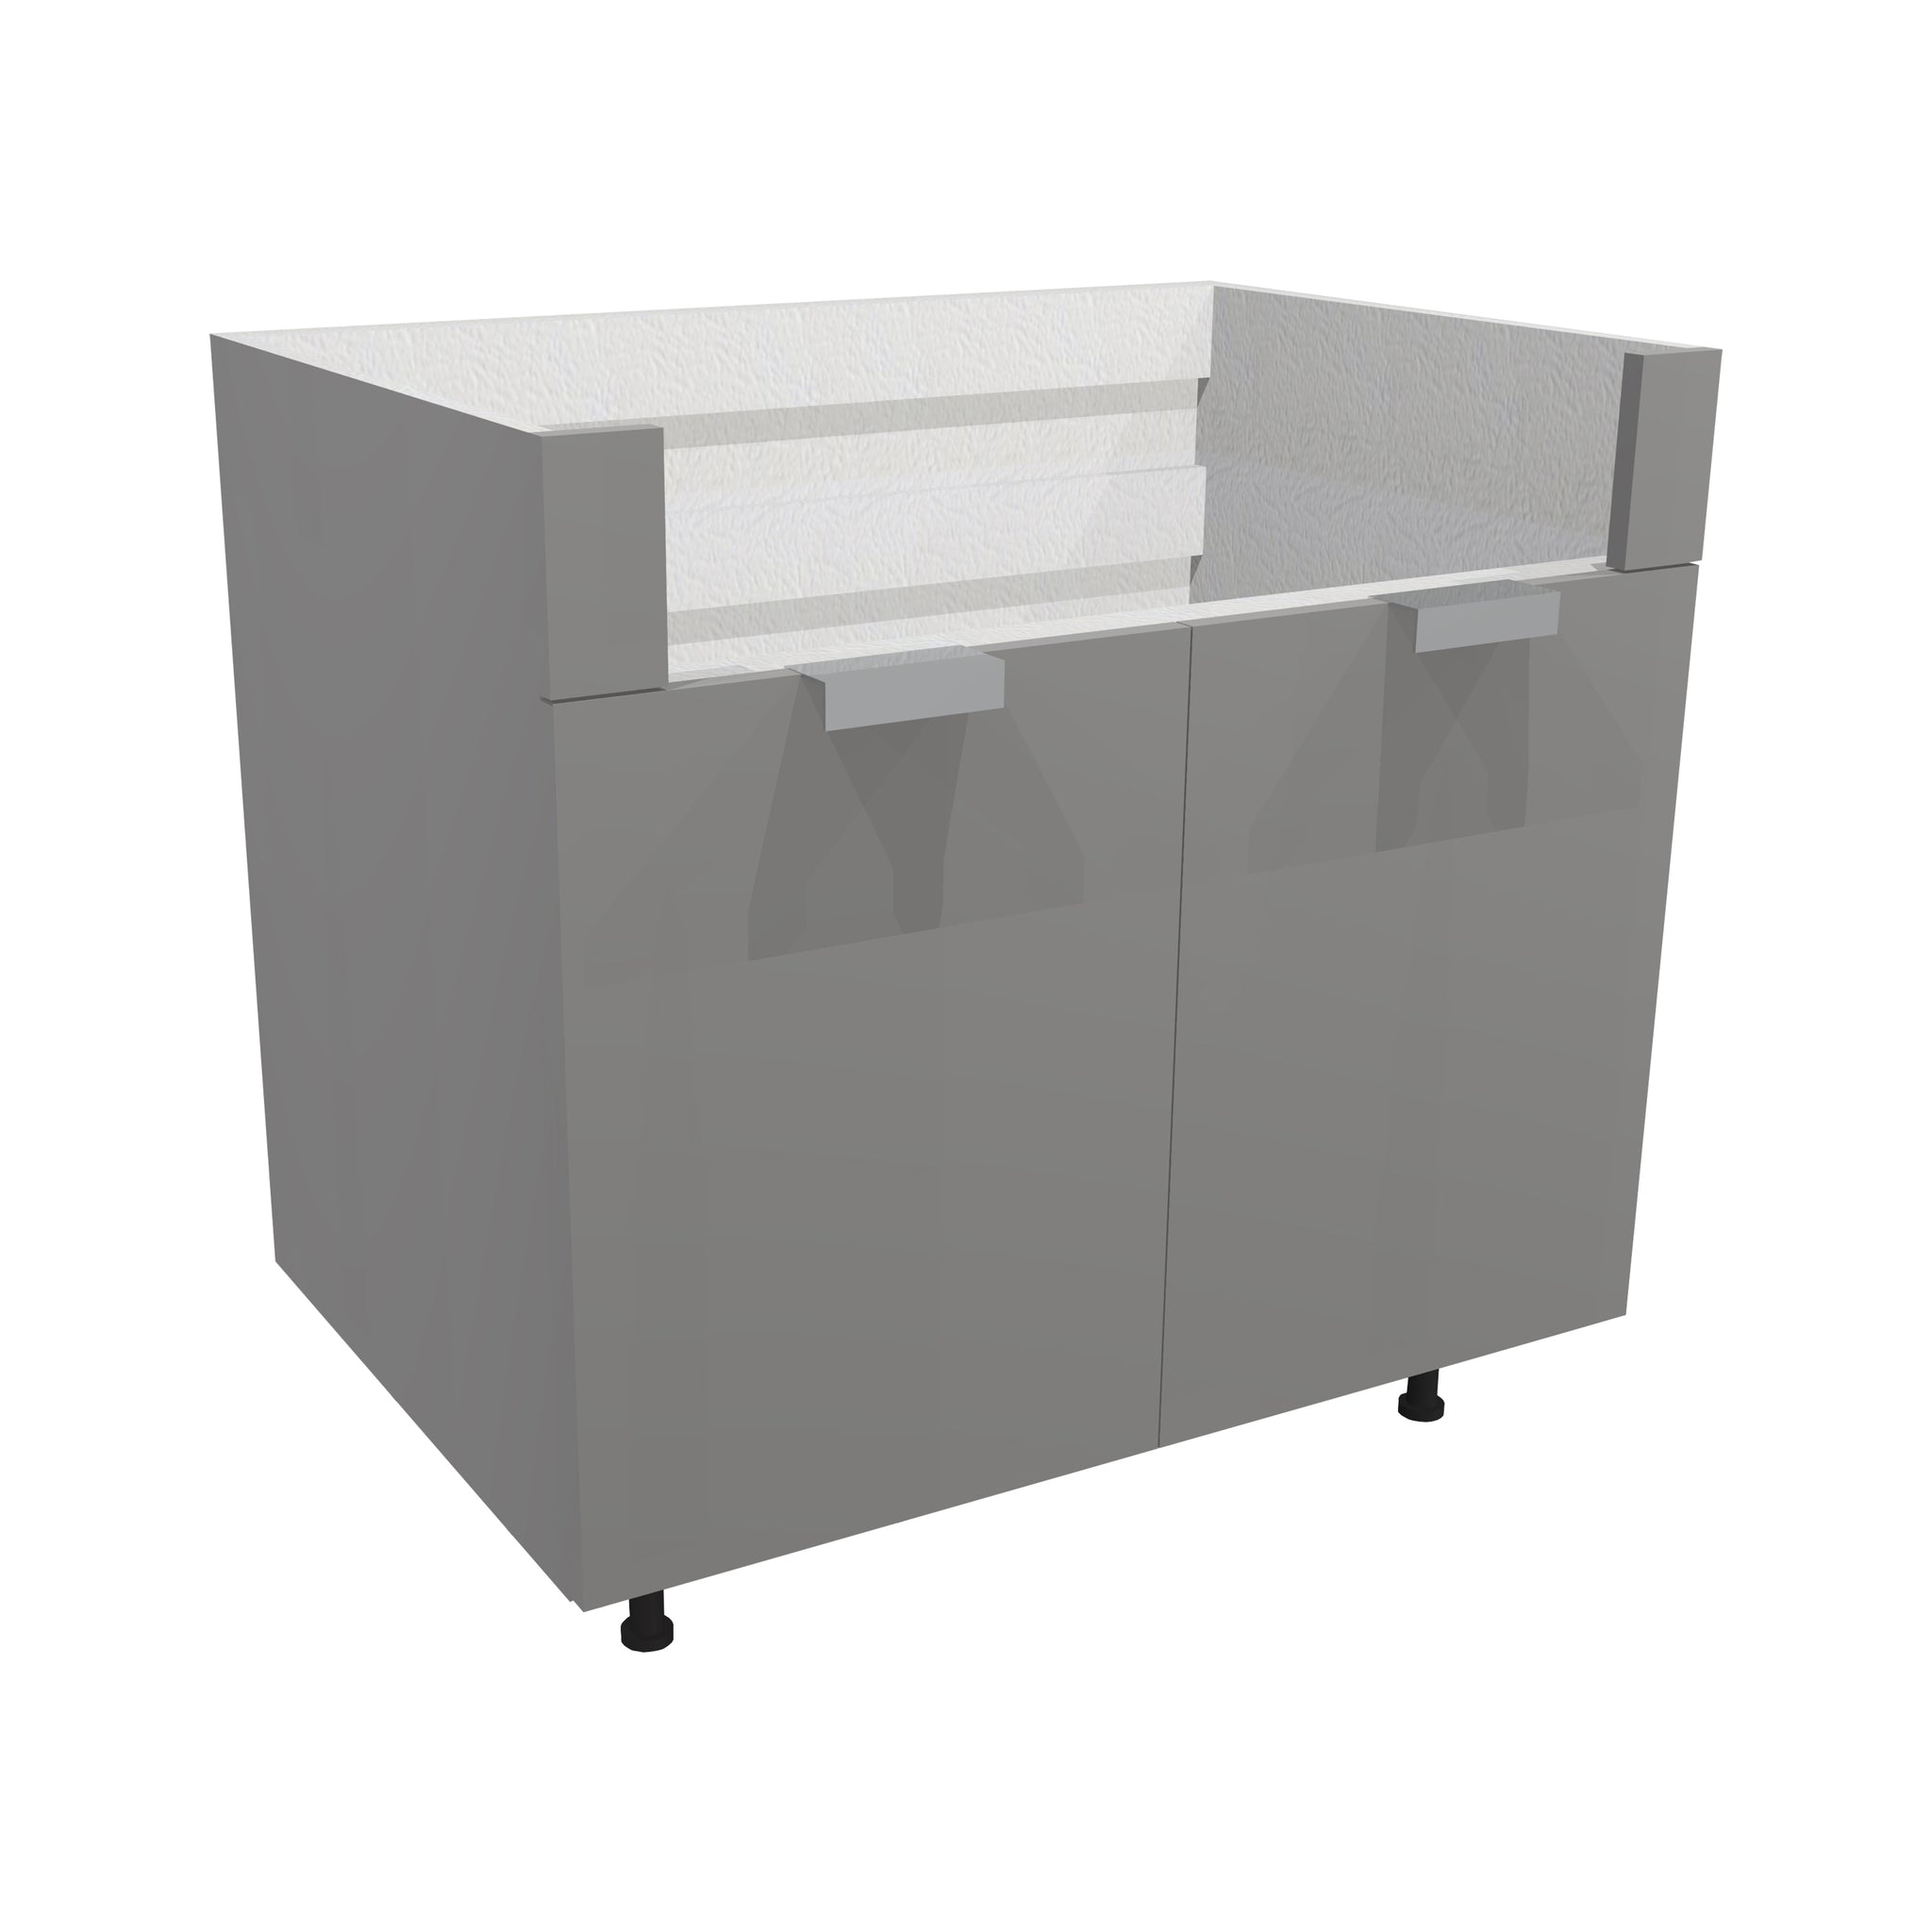 RTA - Glossy Grey - Farm Sink Base Cabinet | 36"W x 34.5"H x 24"D